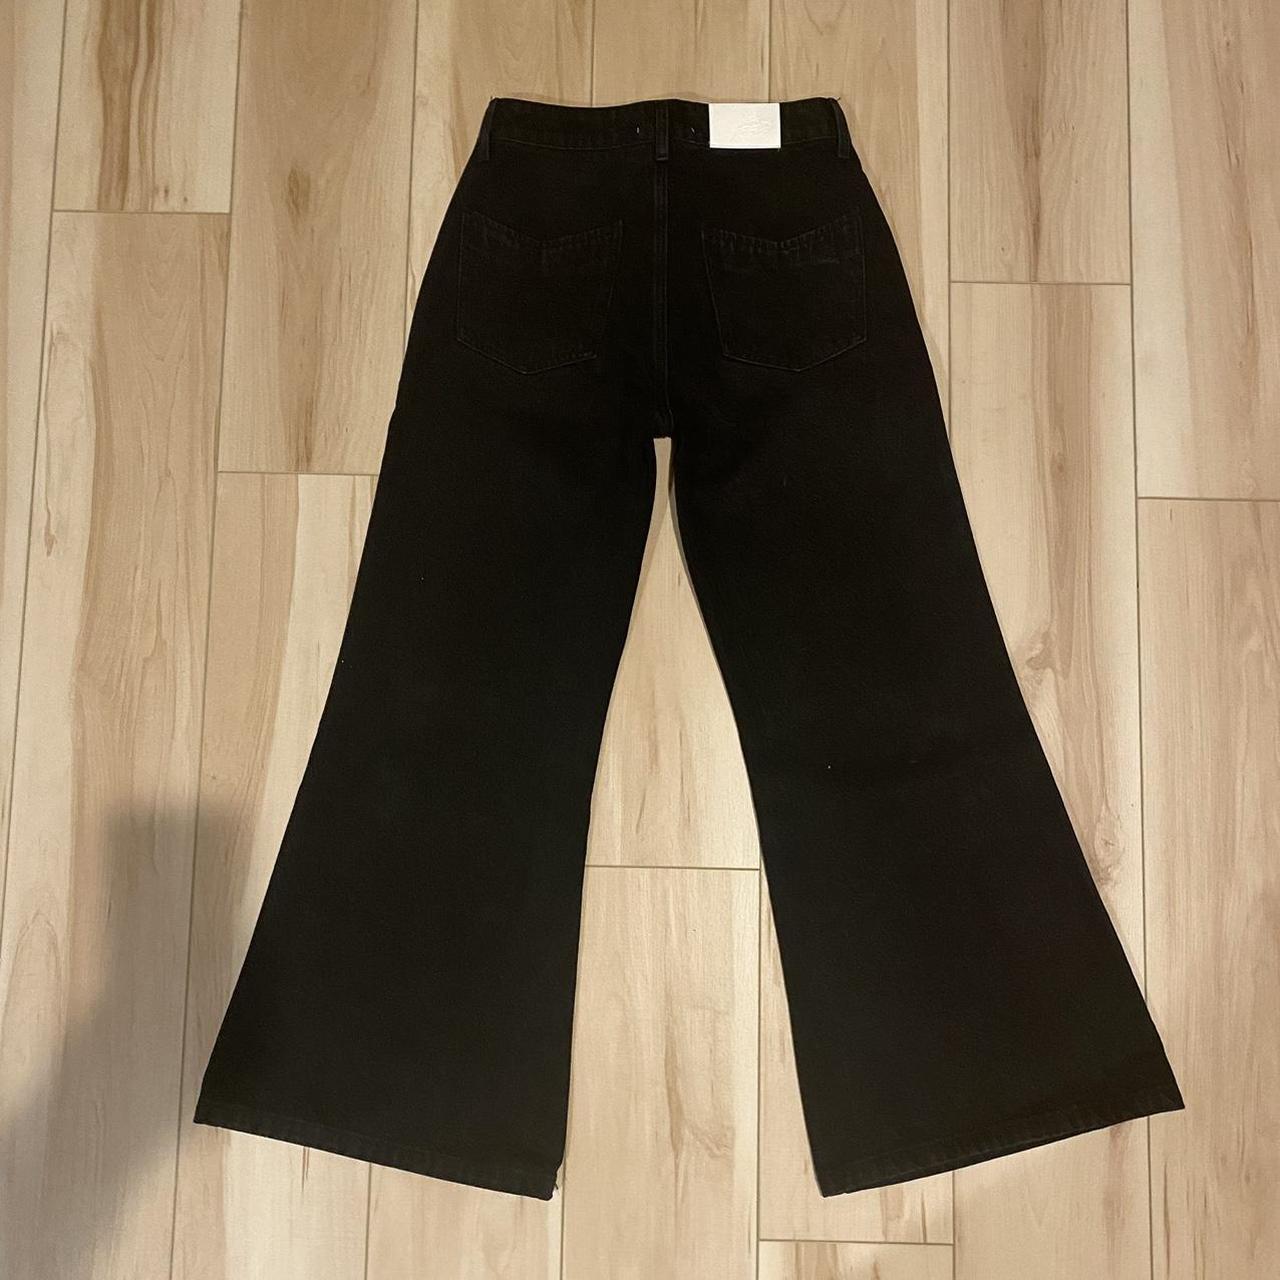 baggy flare denim jeans black handmade in the U.S... - Depop